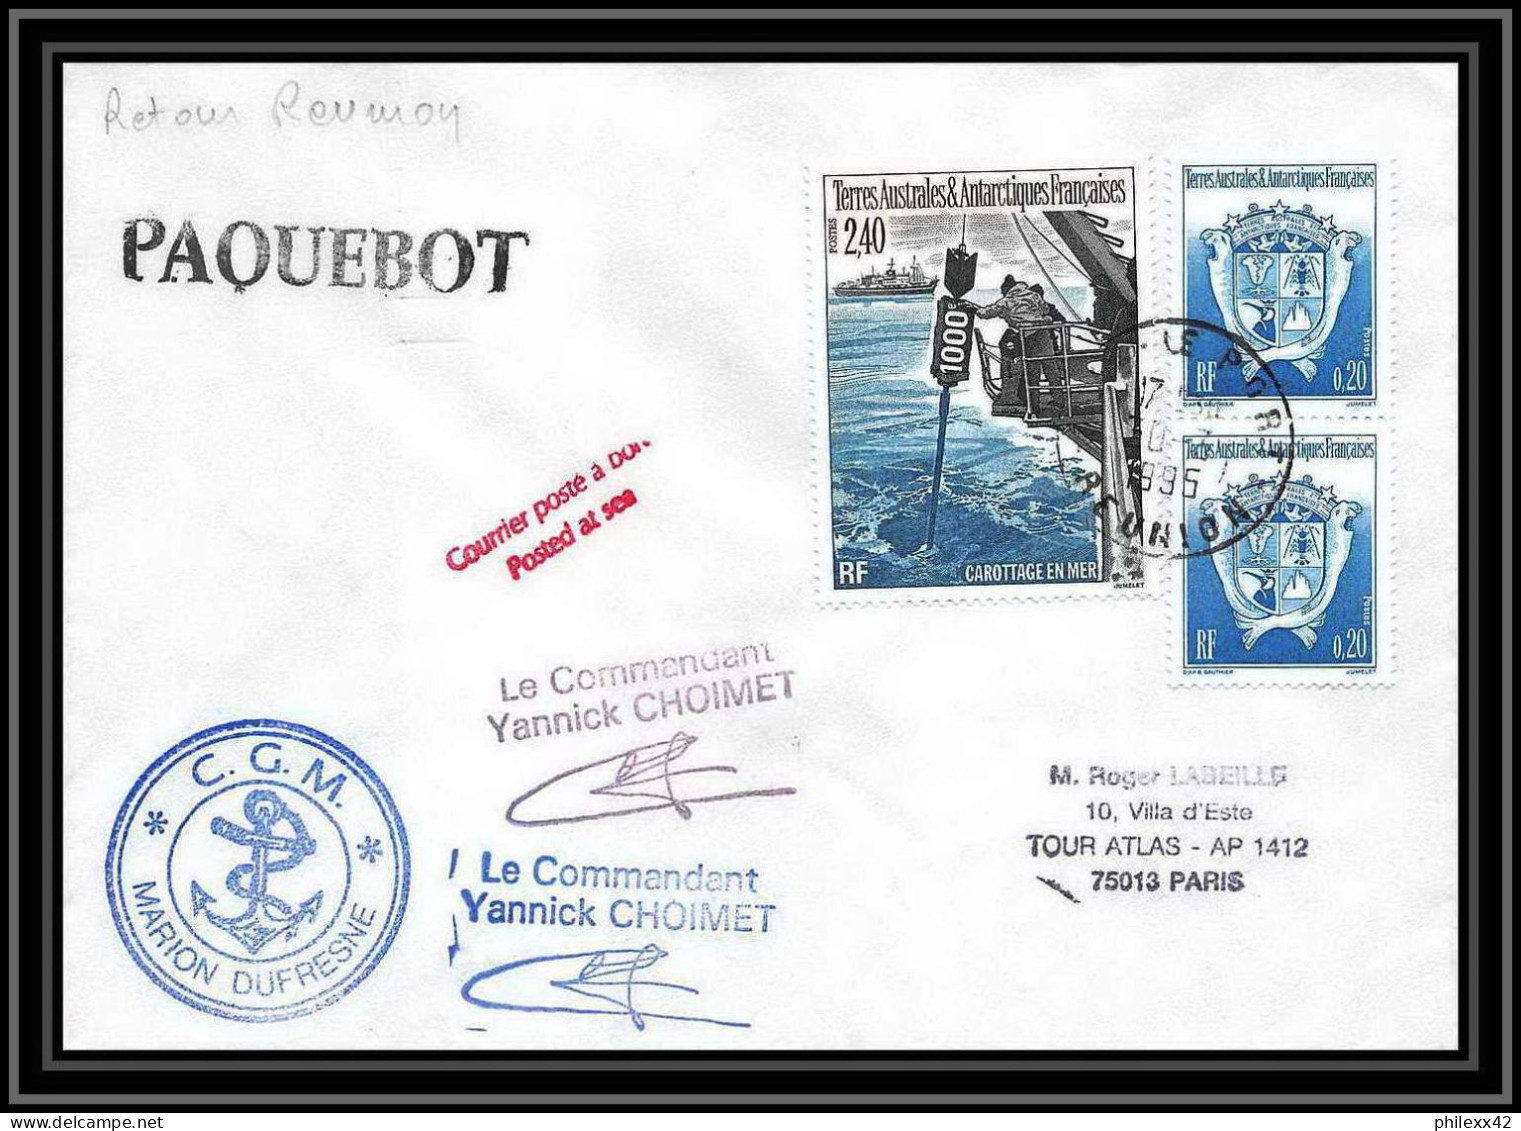 2346 ANTARCTIC Terres Australes TAAF Lettre Cover Dufresne 2 Retour Réunion 30/7/1995 Paquebot Signé Signed Choimet - Spedizioni Antartiche